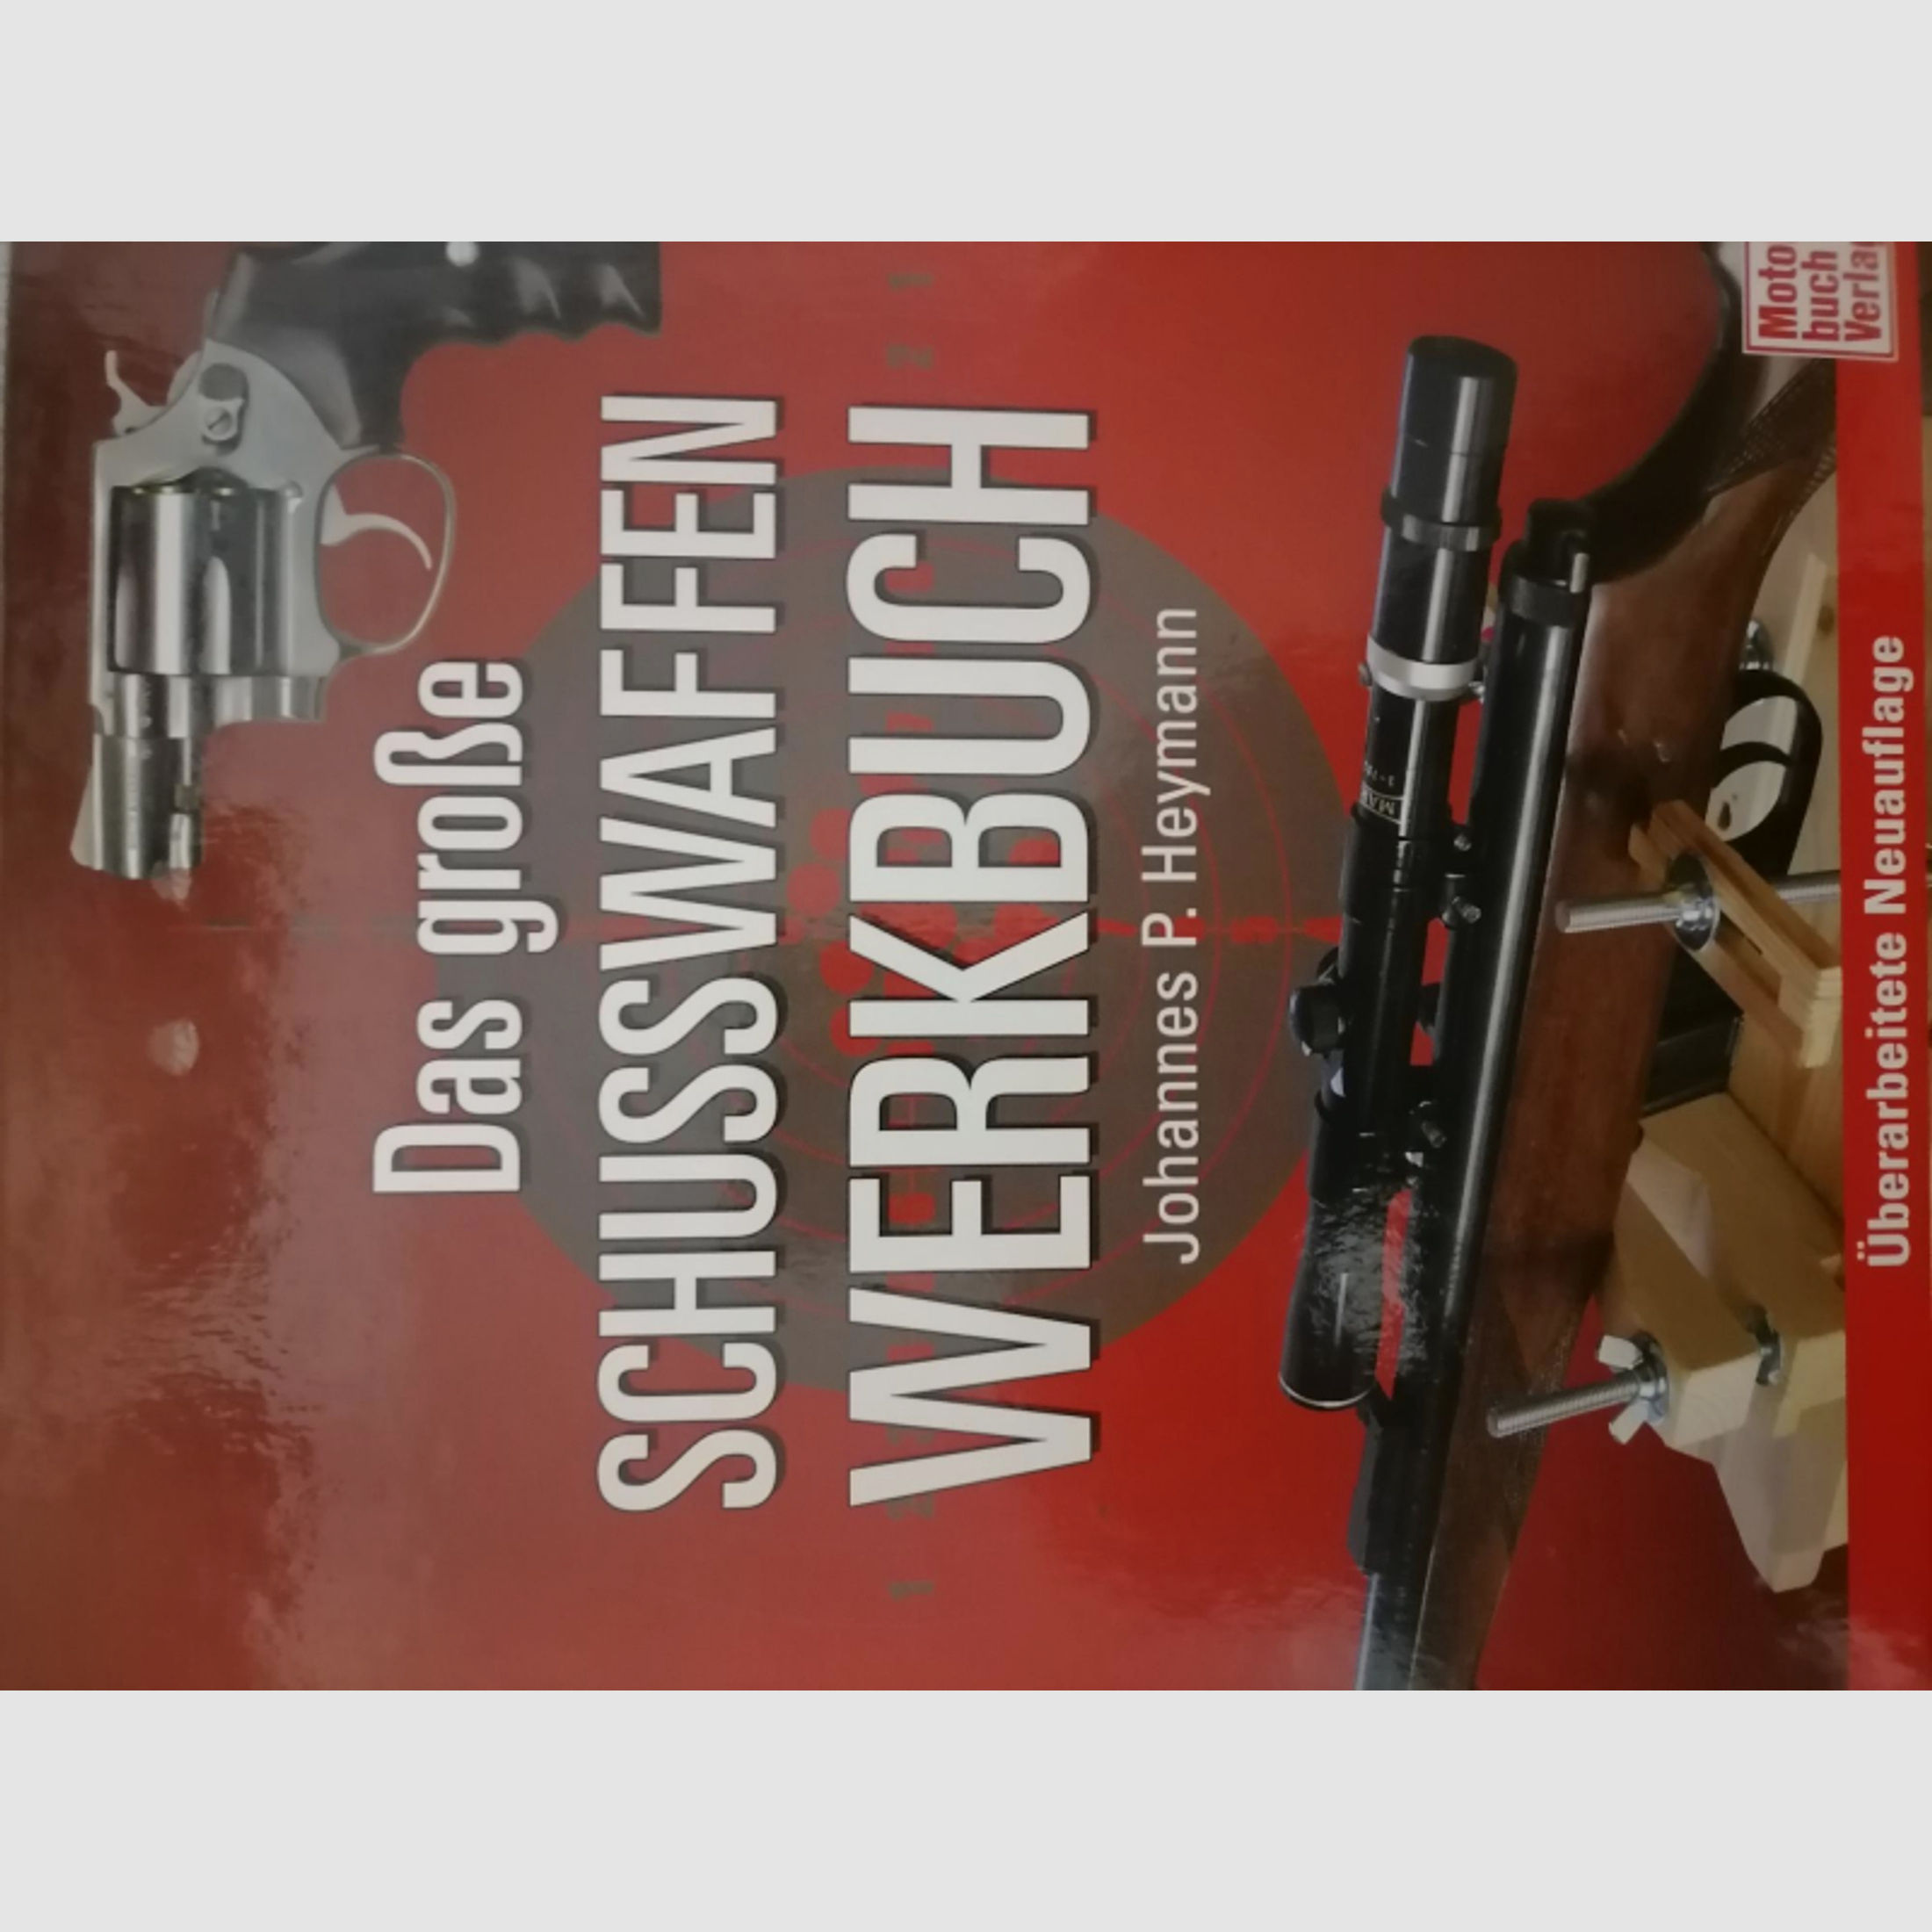 Das große Schusswaffen Werkbuch, Johannes P. Heymann